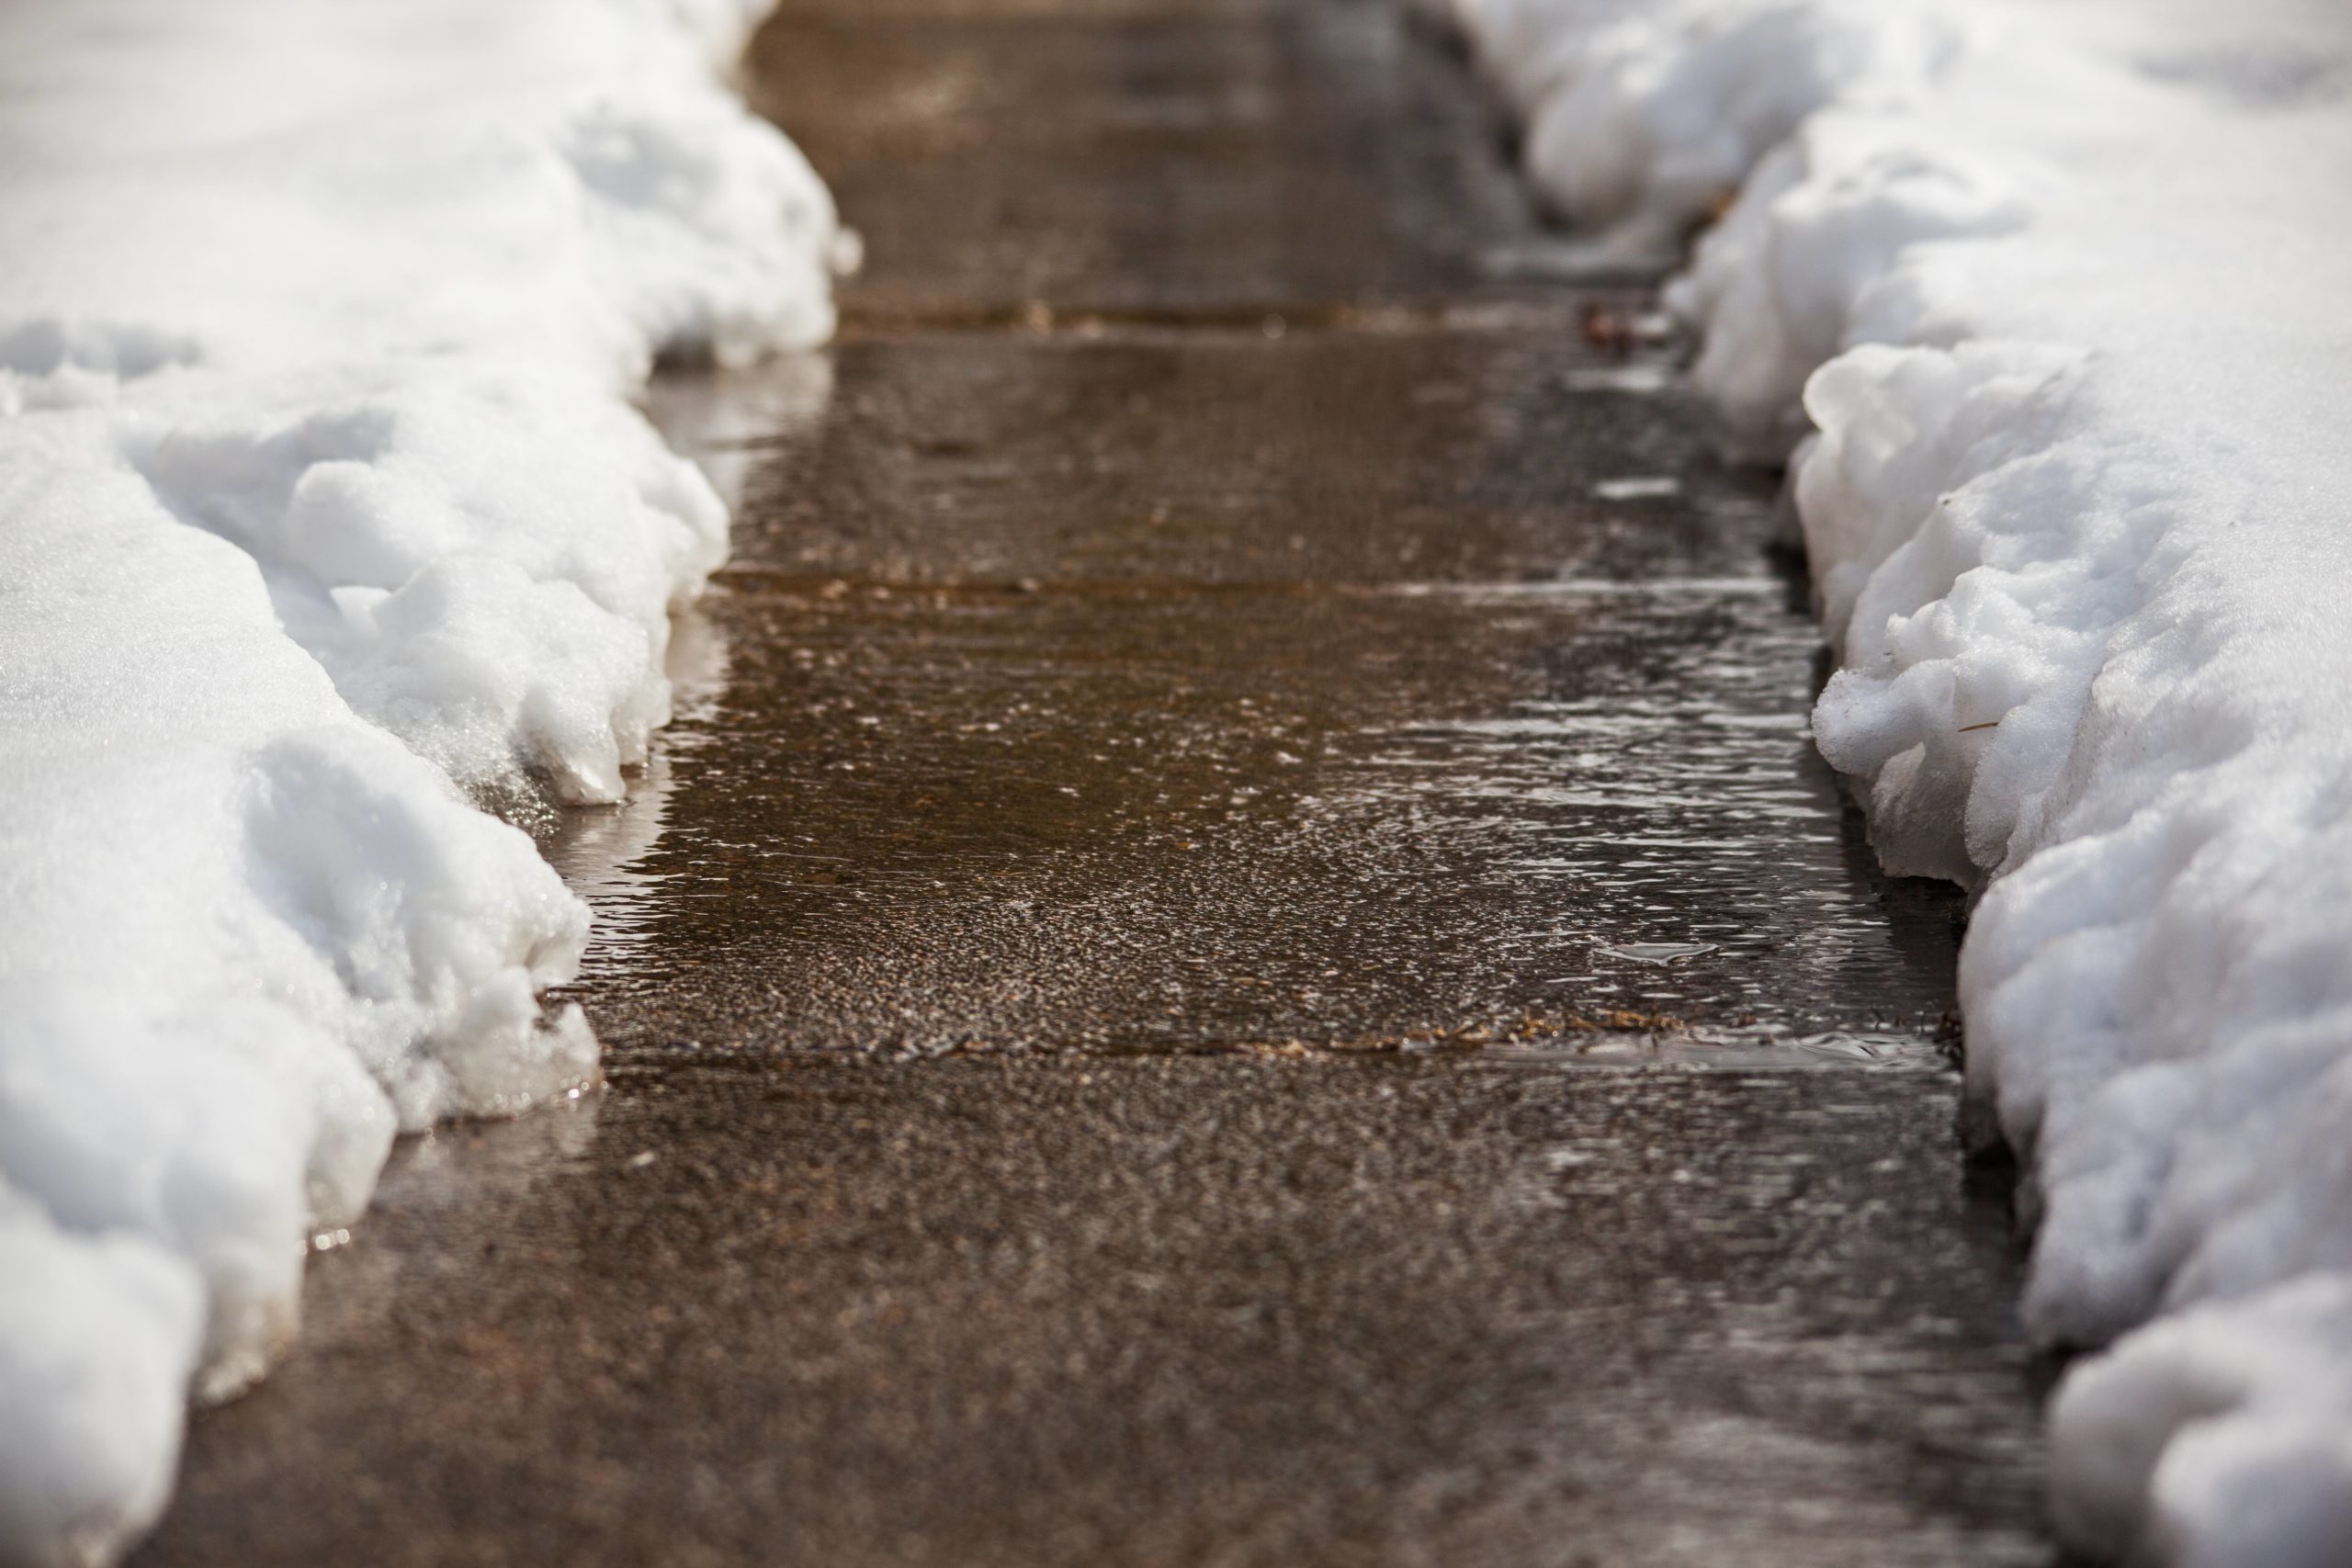 Current product image, Shoveled sidewalk after snow